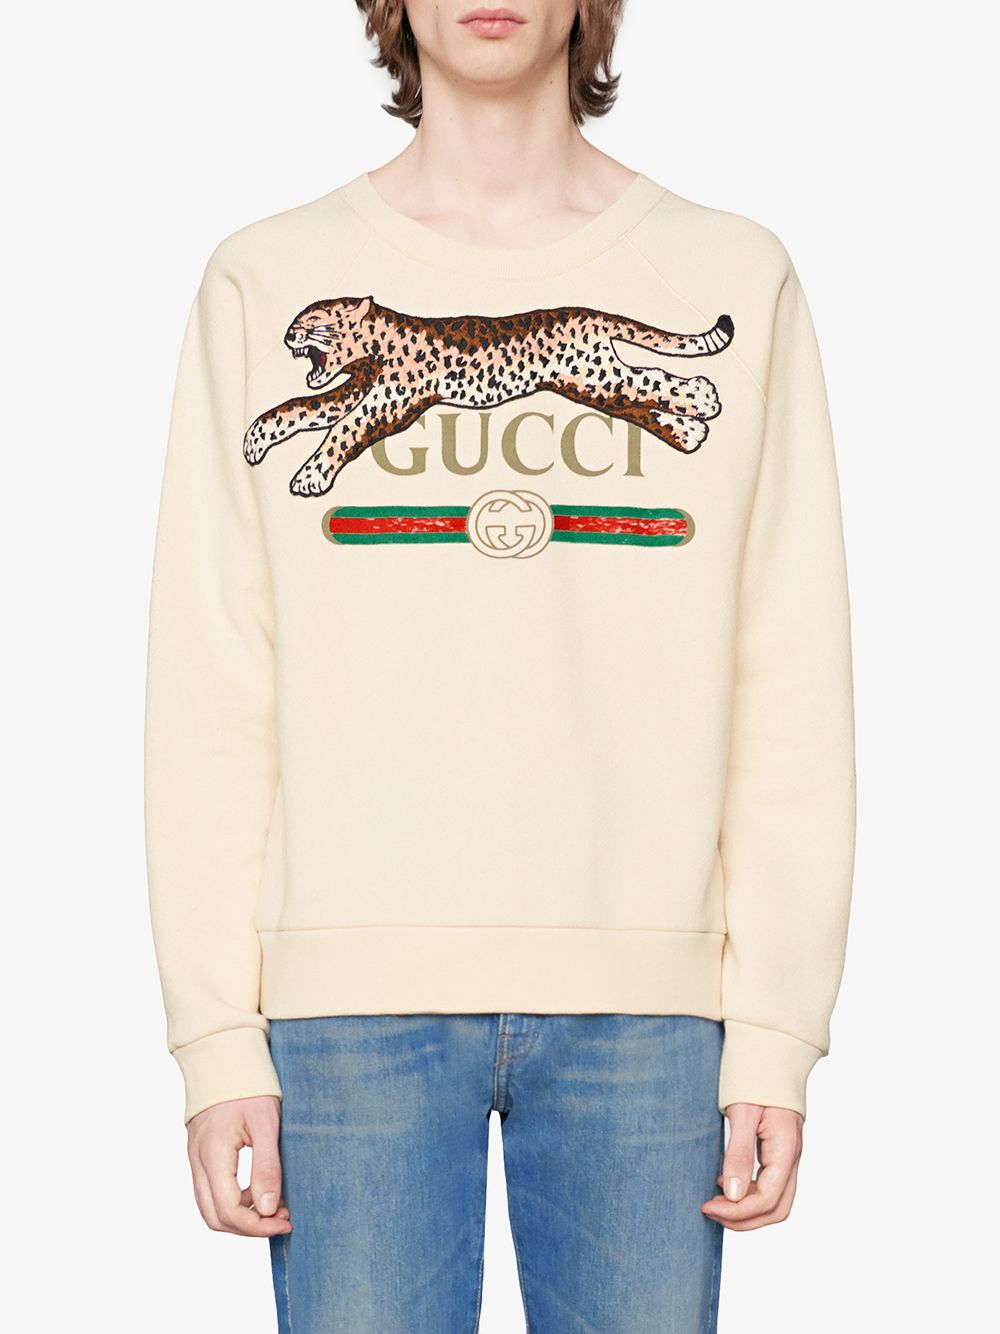 фото Gucci толстовка с логотипом и нашивкой леопарда